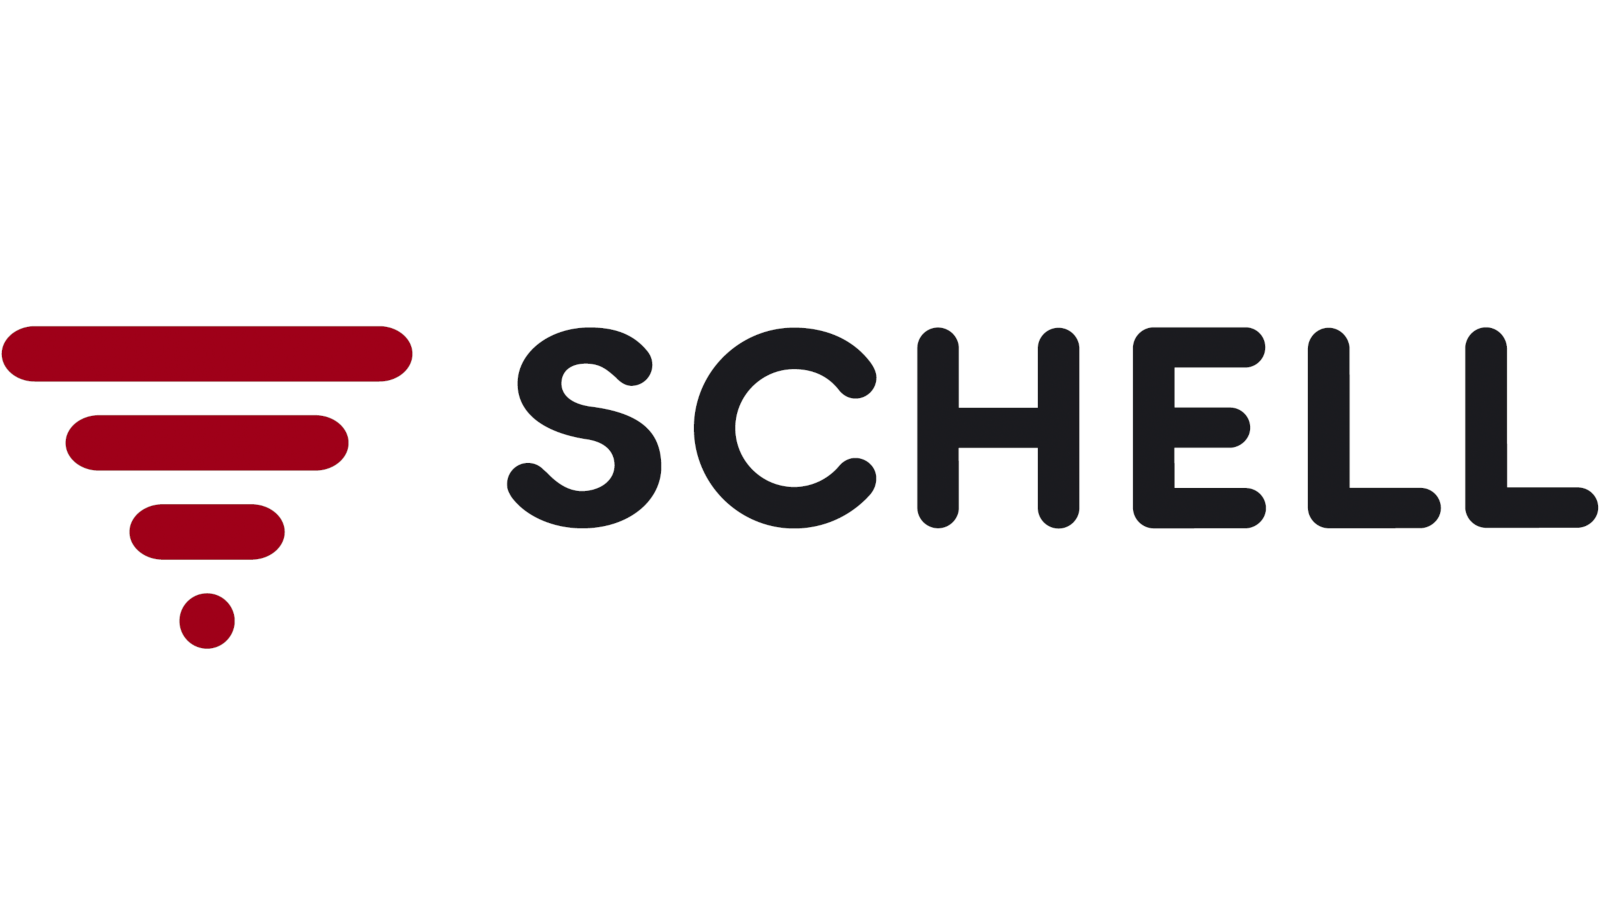 SCHELL GmbH&CO.KG - 56090 üreticisi için resim